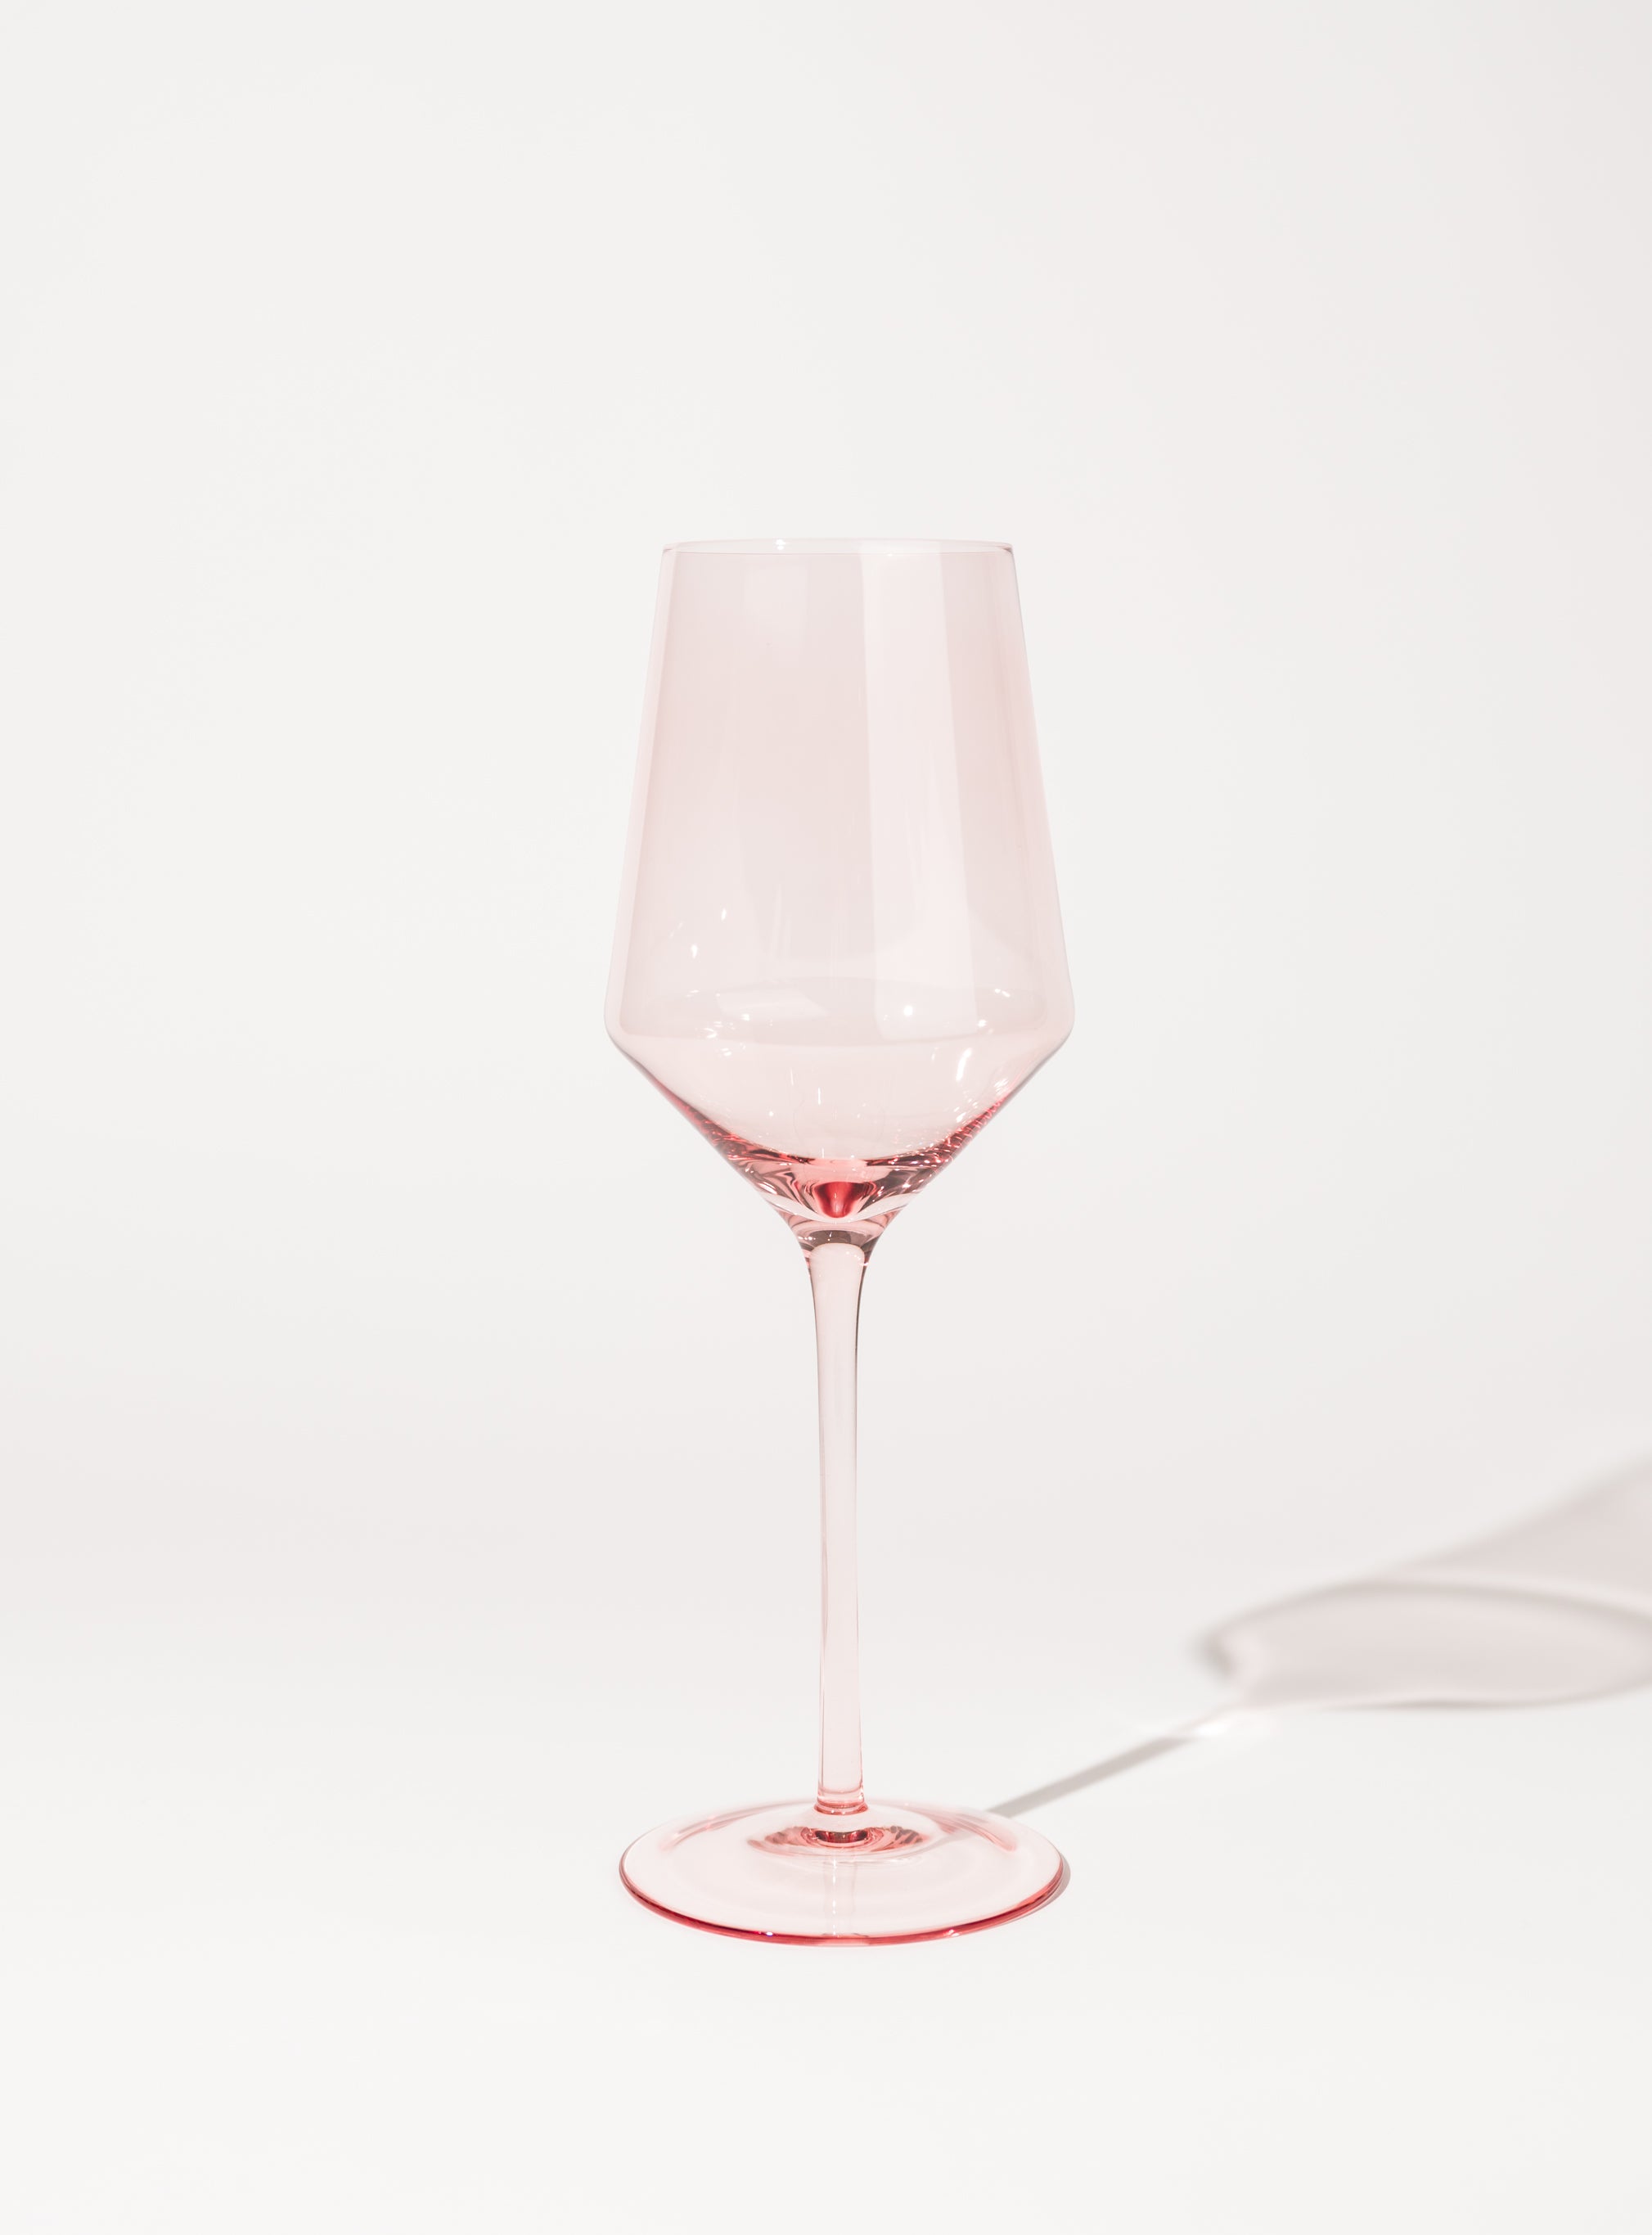 Sofia Colored Wine Glasses